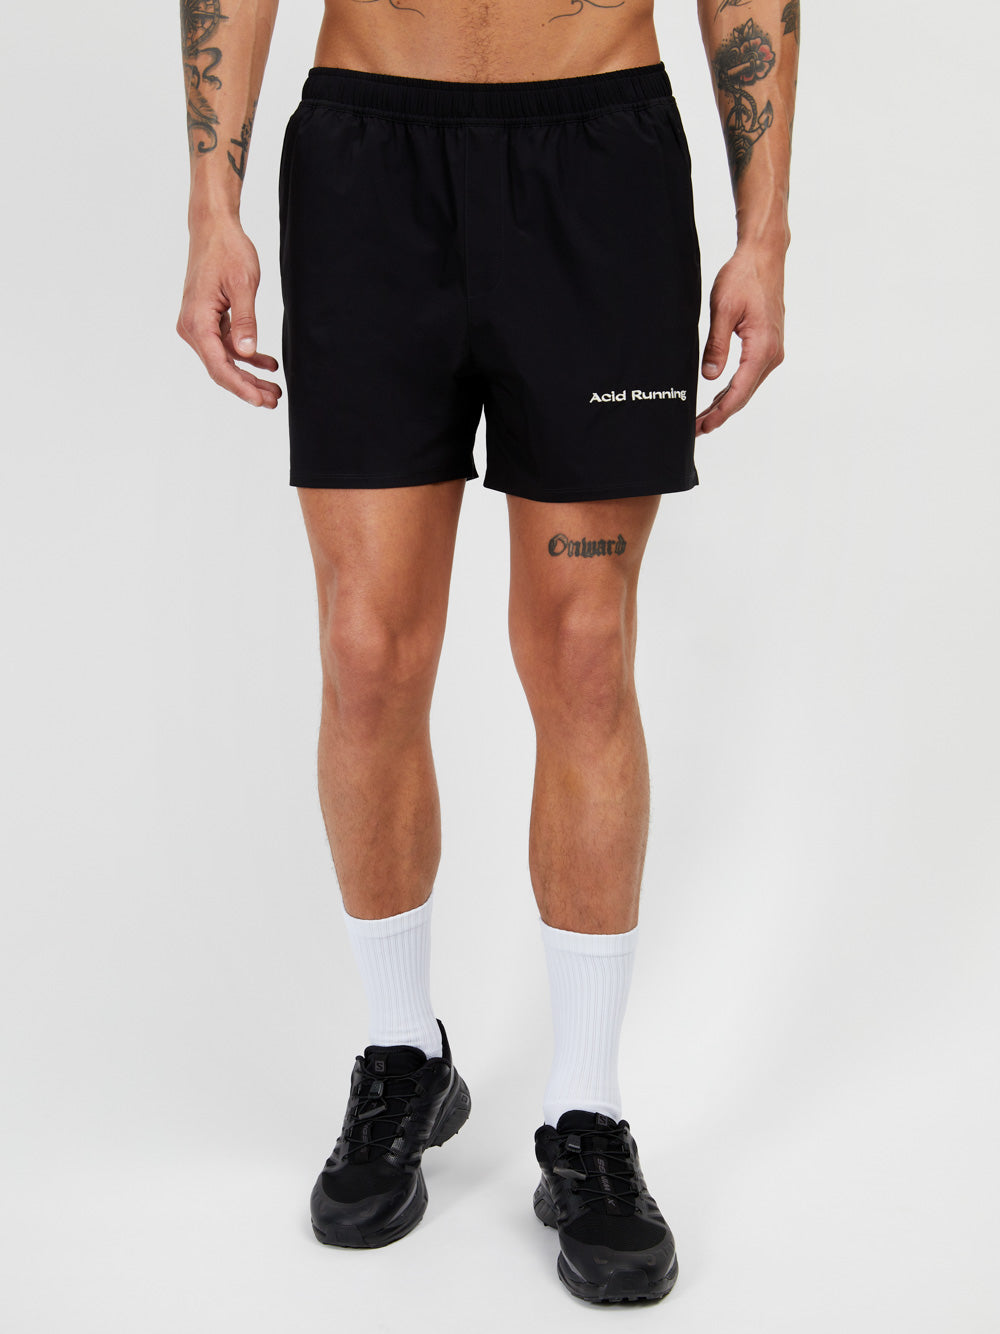 Black Athletic Shorts 2.0